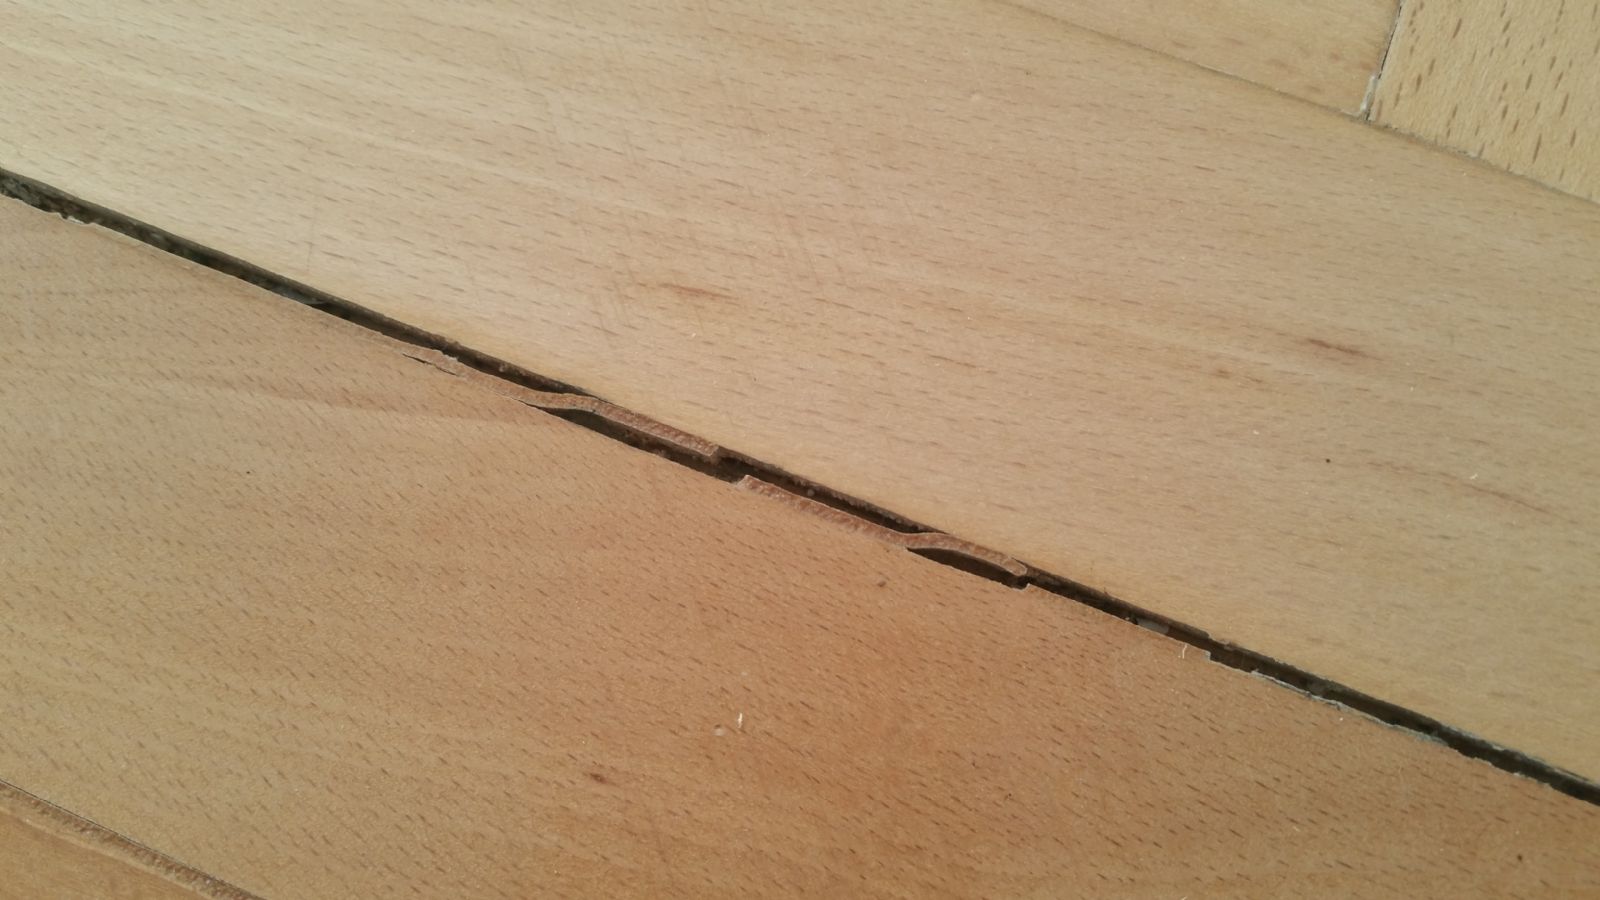 Čím vyplnit spáry v dřevěné podlaze?